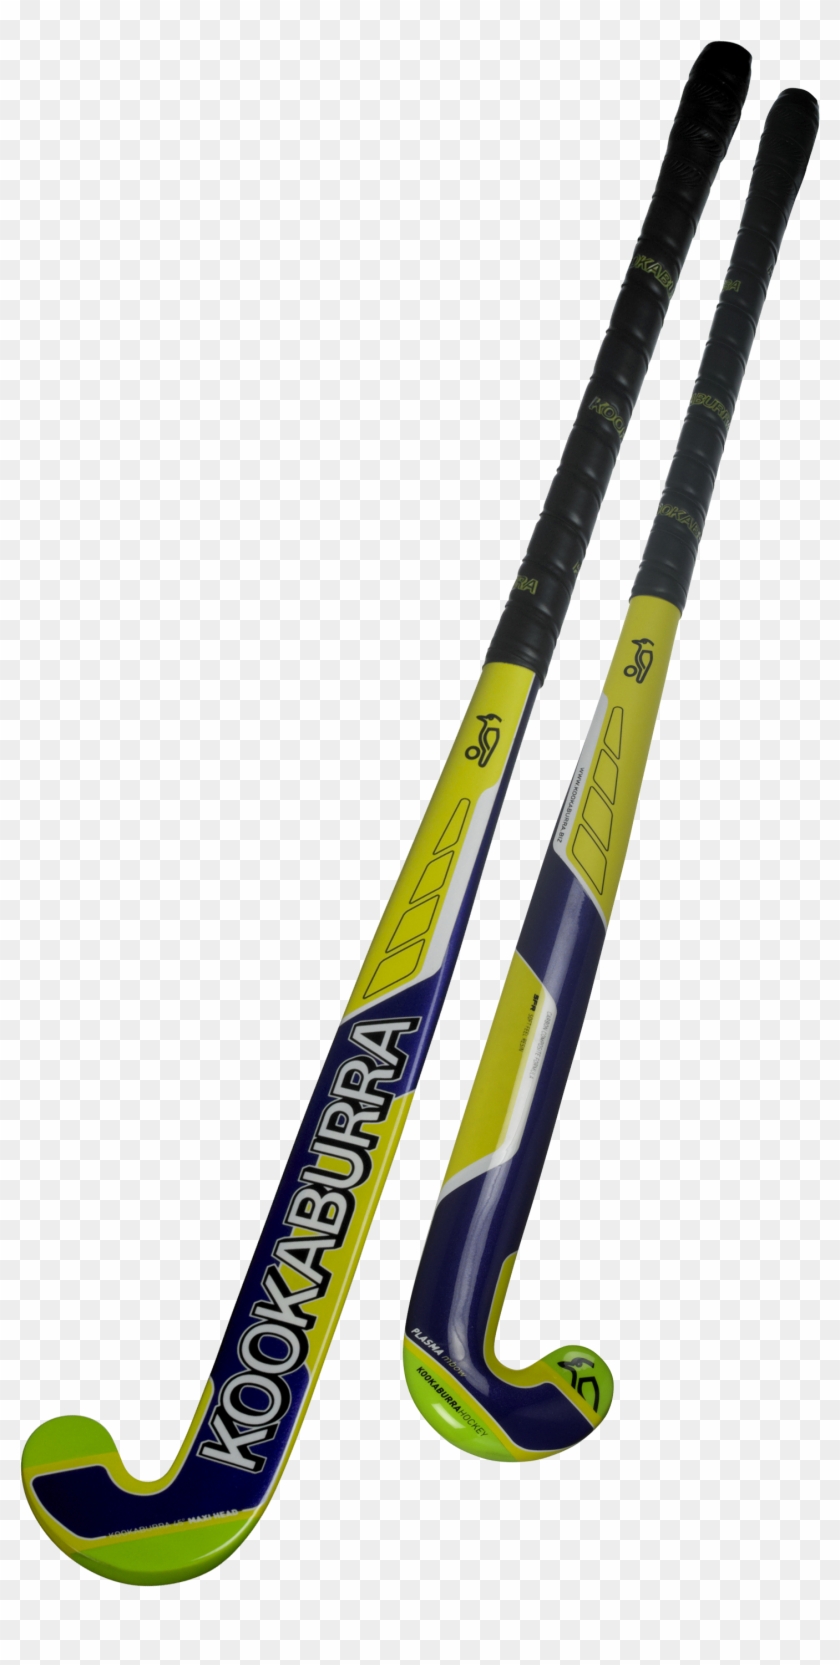 Kookaburra Plasma Mbow Hockey Stick - Kookaburra Hockey Kookaburra Combust M-bow Composite #76145